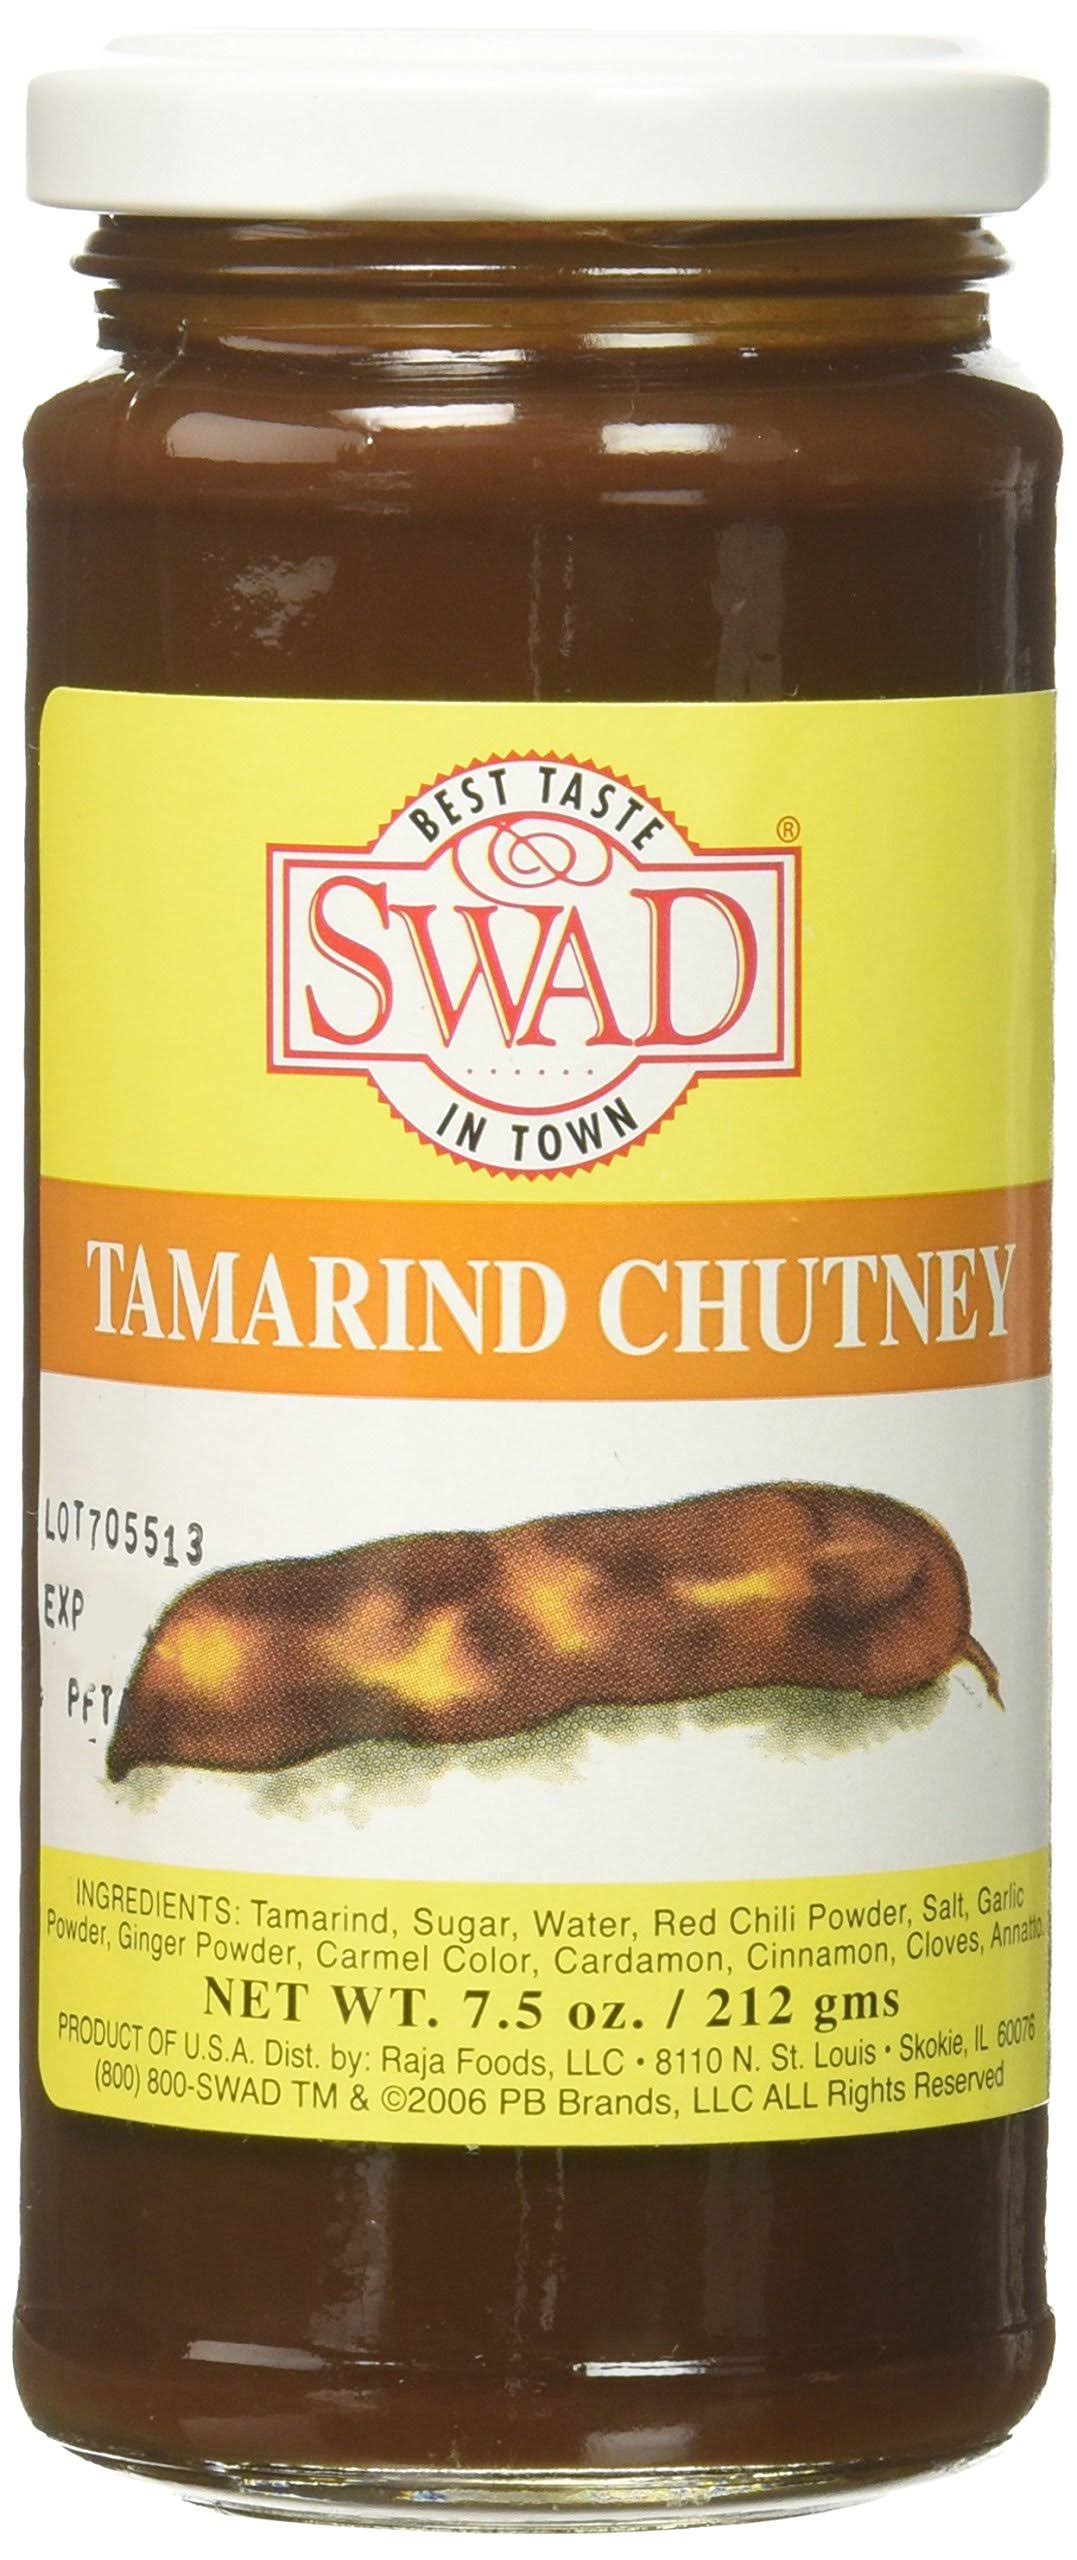 Great Bazaar Swad Tamarind Chutney - 8oz